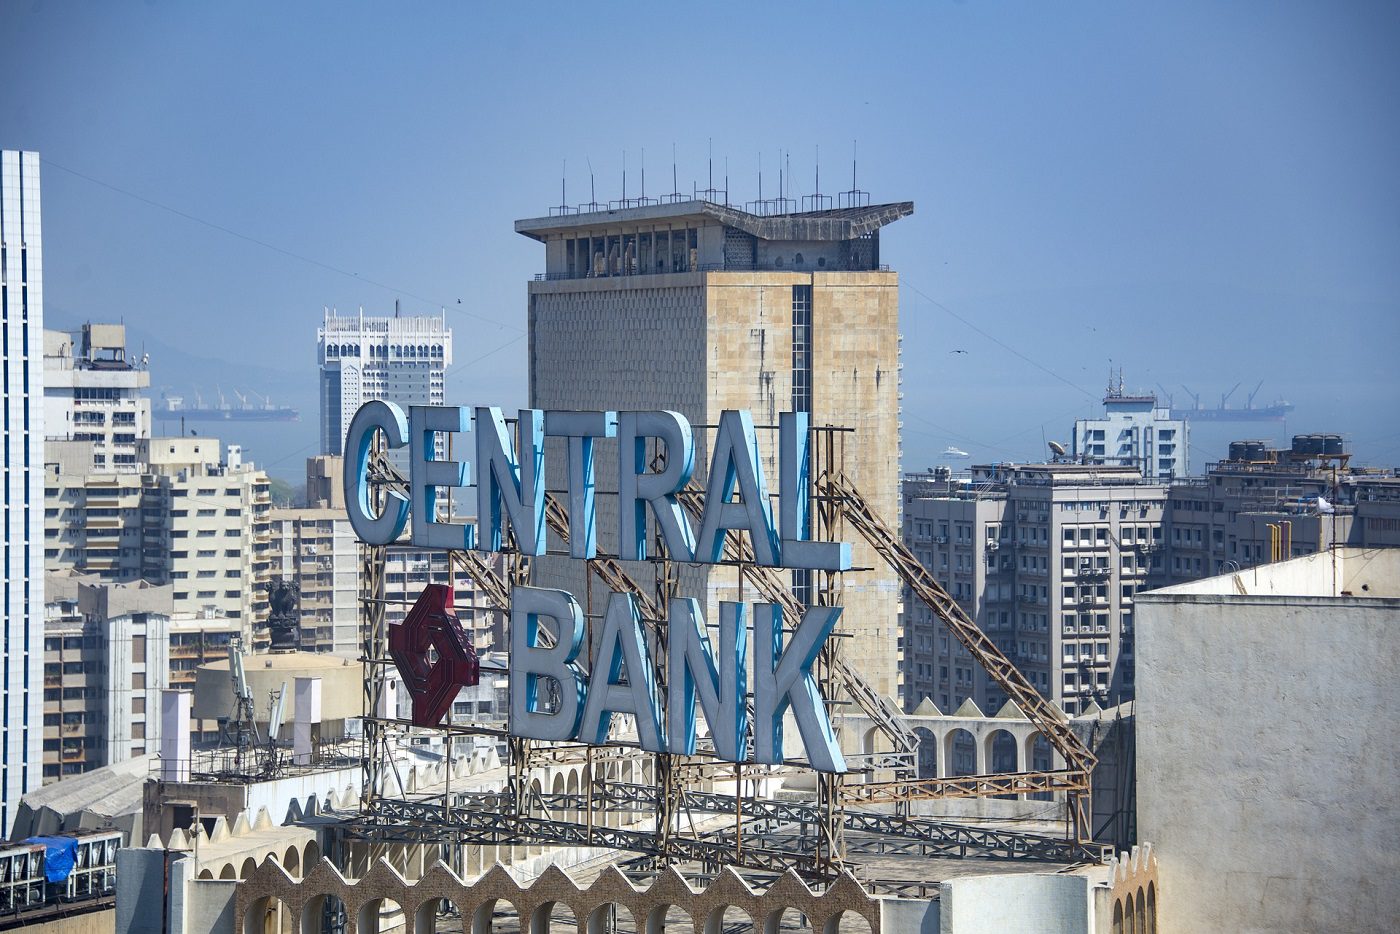 Centralna banka